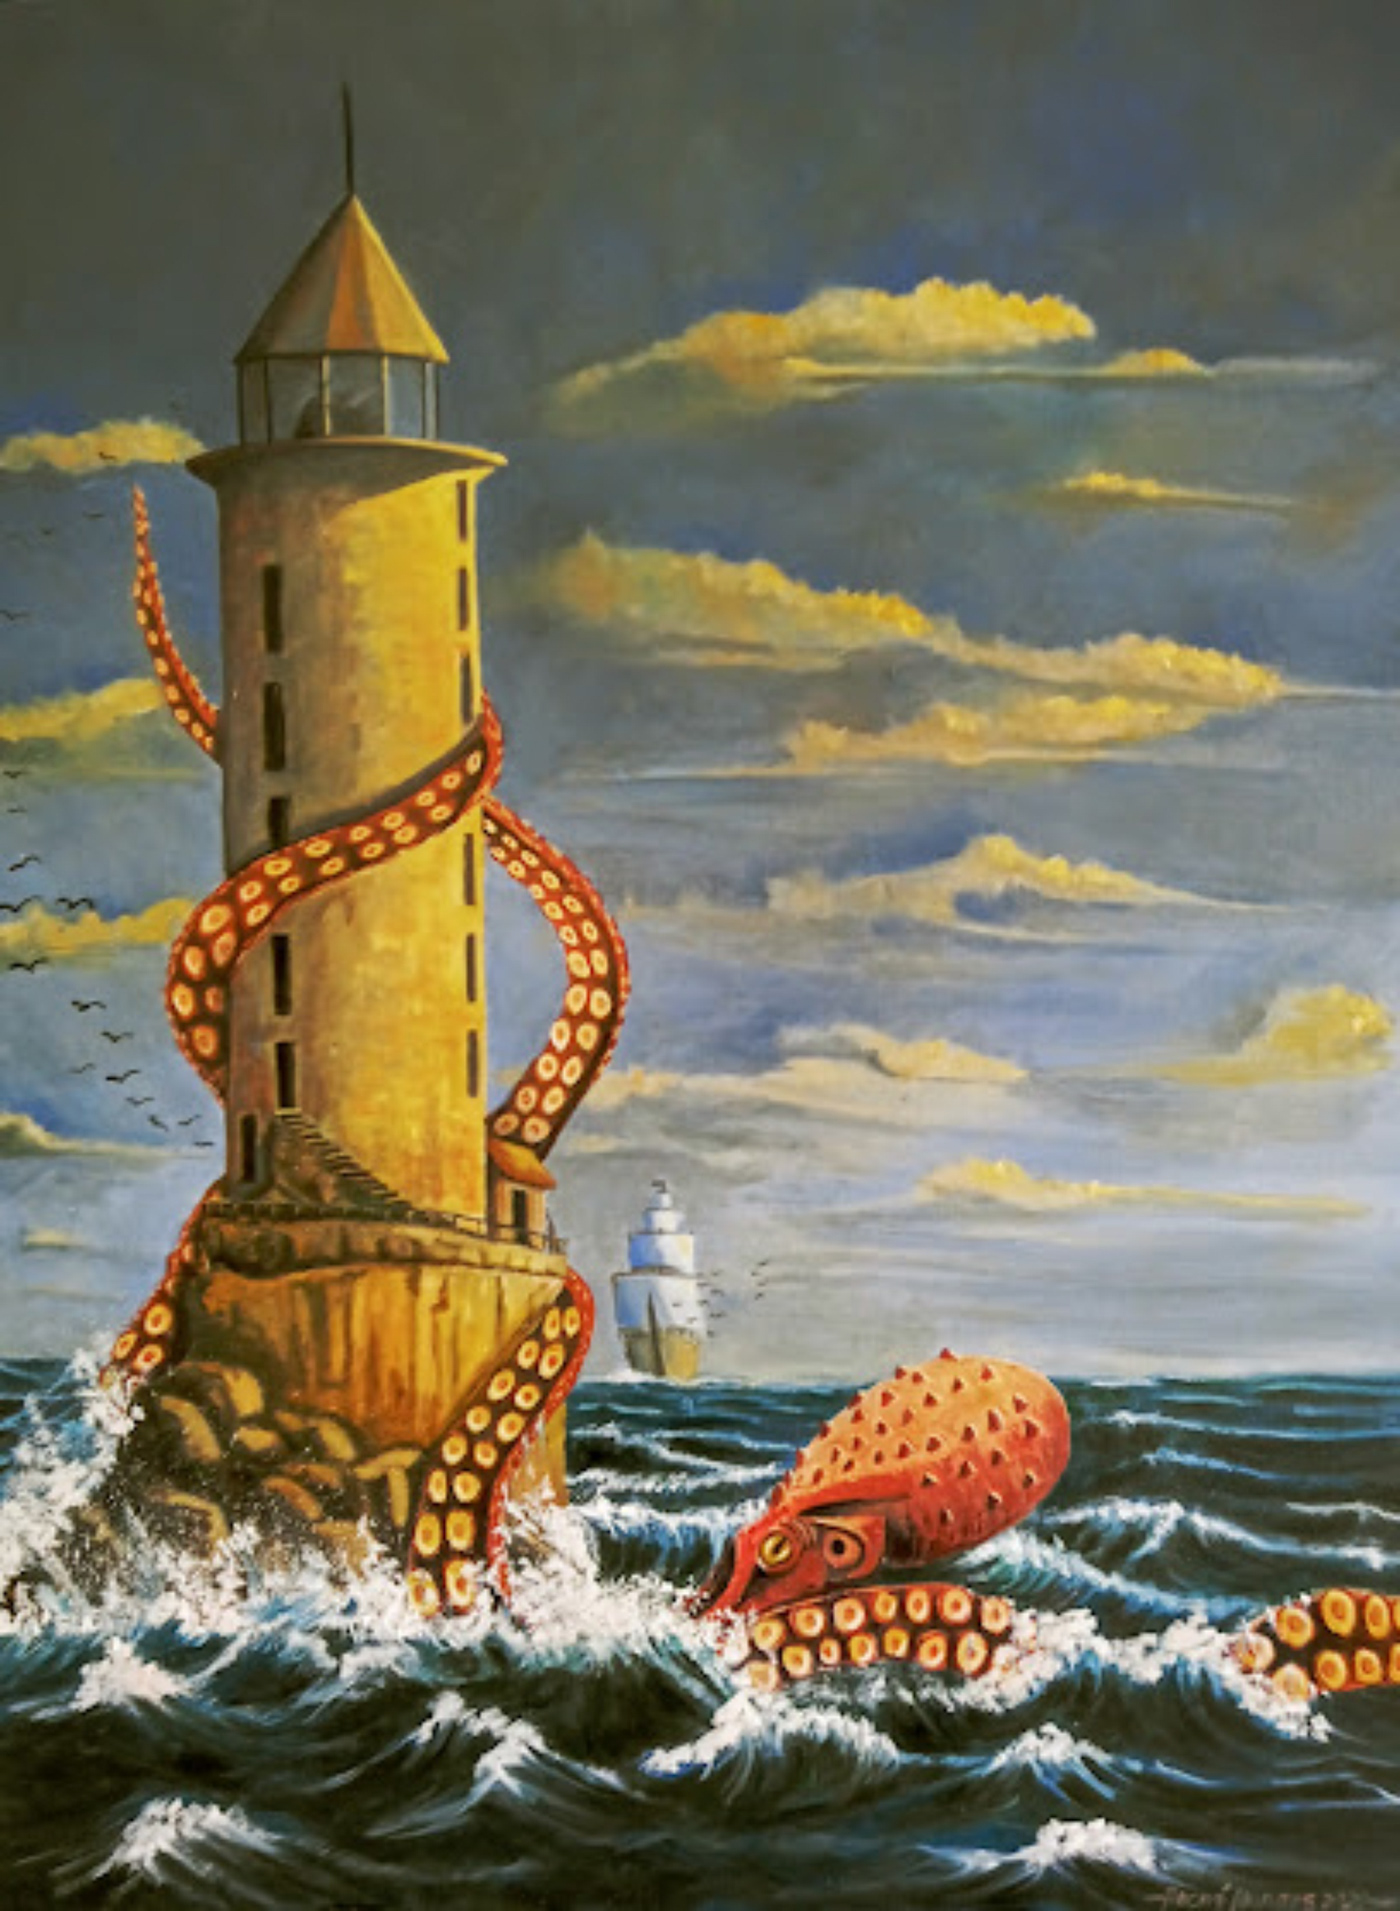 arte arte brasileira caravela desenho fantasia Farol Ilustração oceano Óleo sobre tela pintura